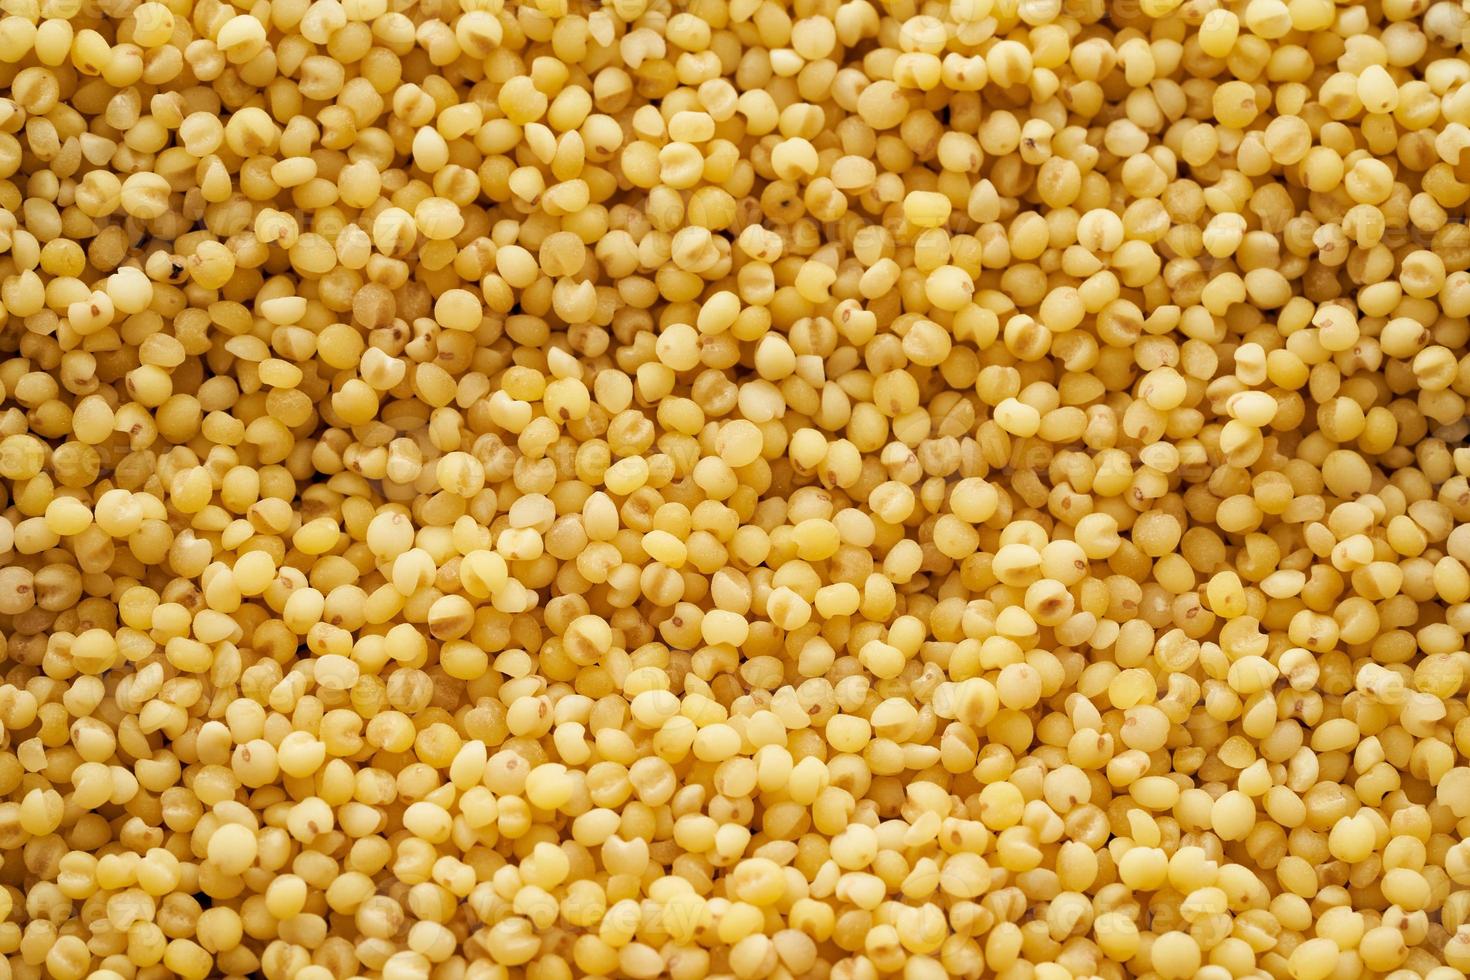 sorghum or sorghum grain, millet grain or millet seed texture ...